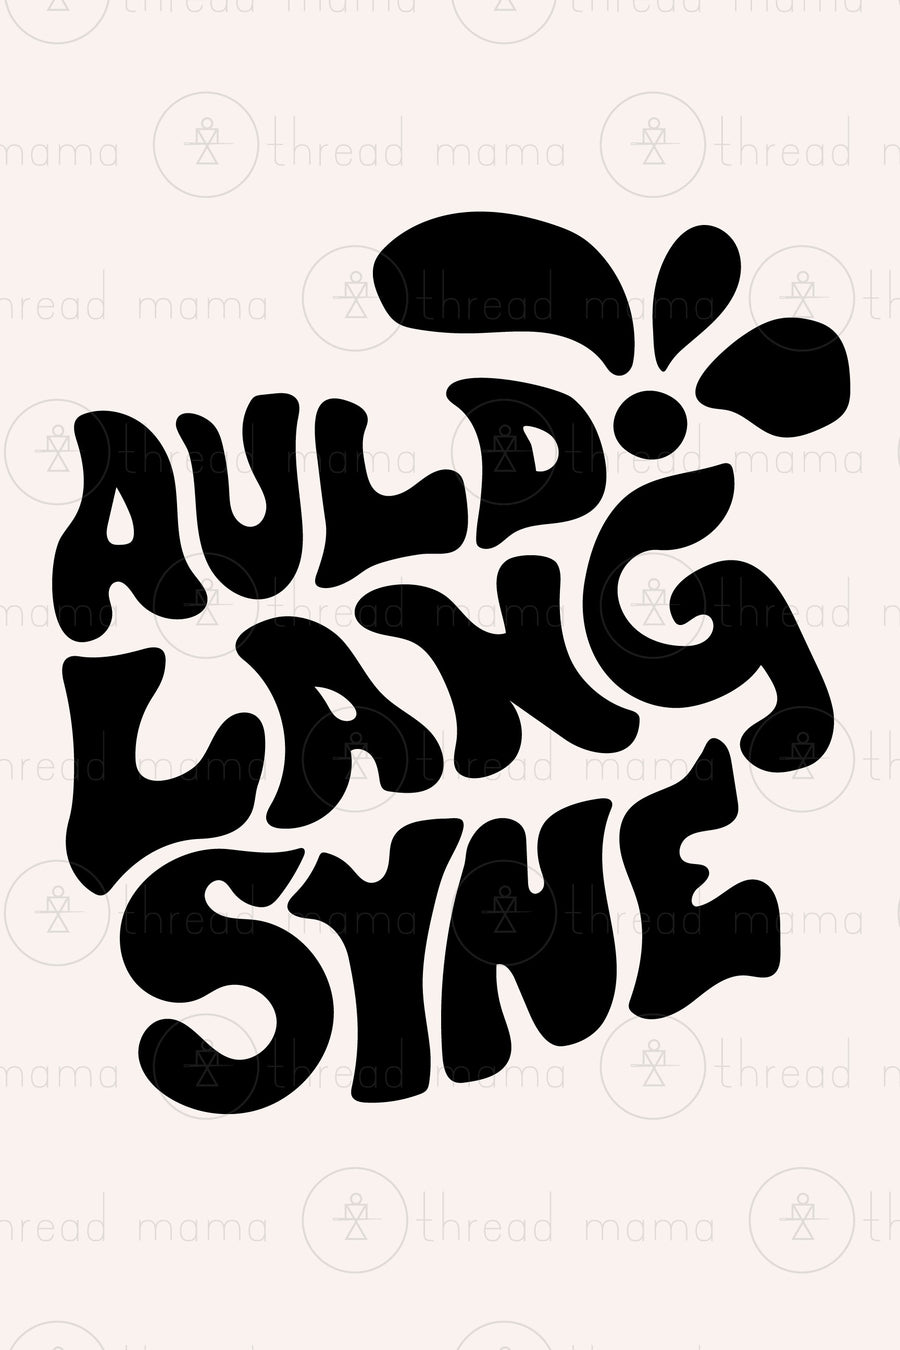 Auld Lang Syne - Set